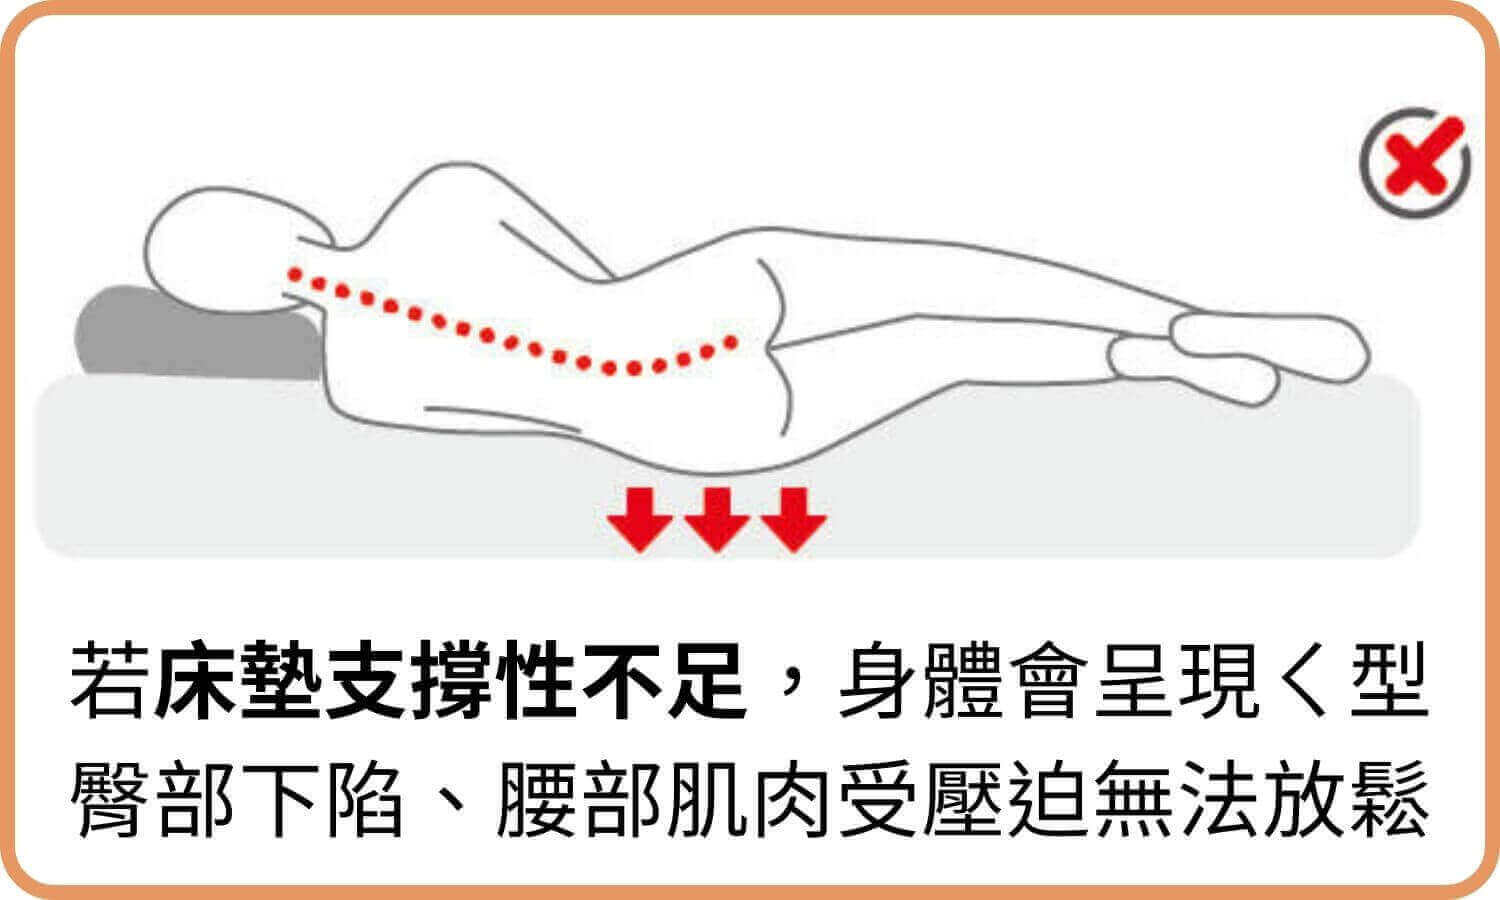 若床墊支撐性不足，身體會呈現ㄑ型，臀部下陷、腰部肌肉受壓迫無法放鬆